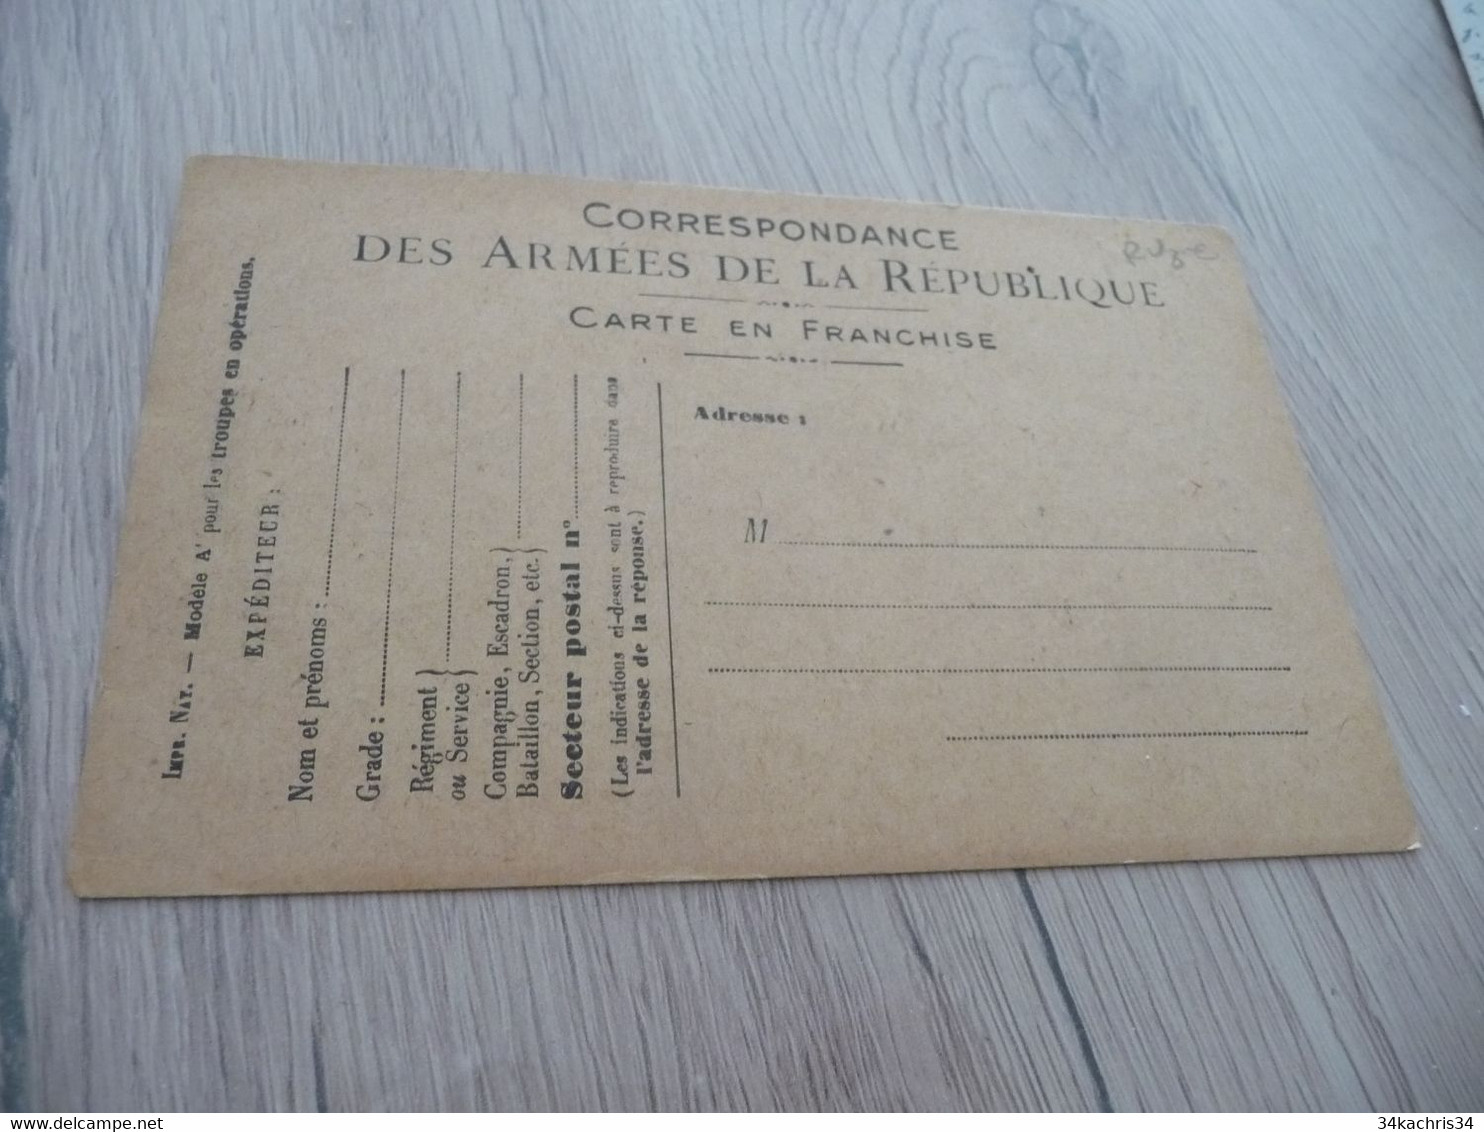 CPFM Carte Postale Franchise Militaire Guerre 14/18 Illustre Vierge Emprunt Vierge - Lettres & Documents